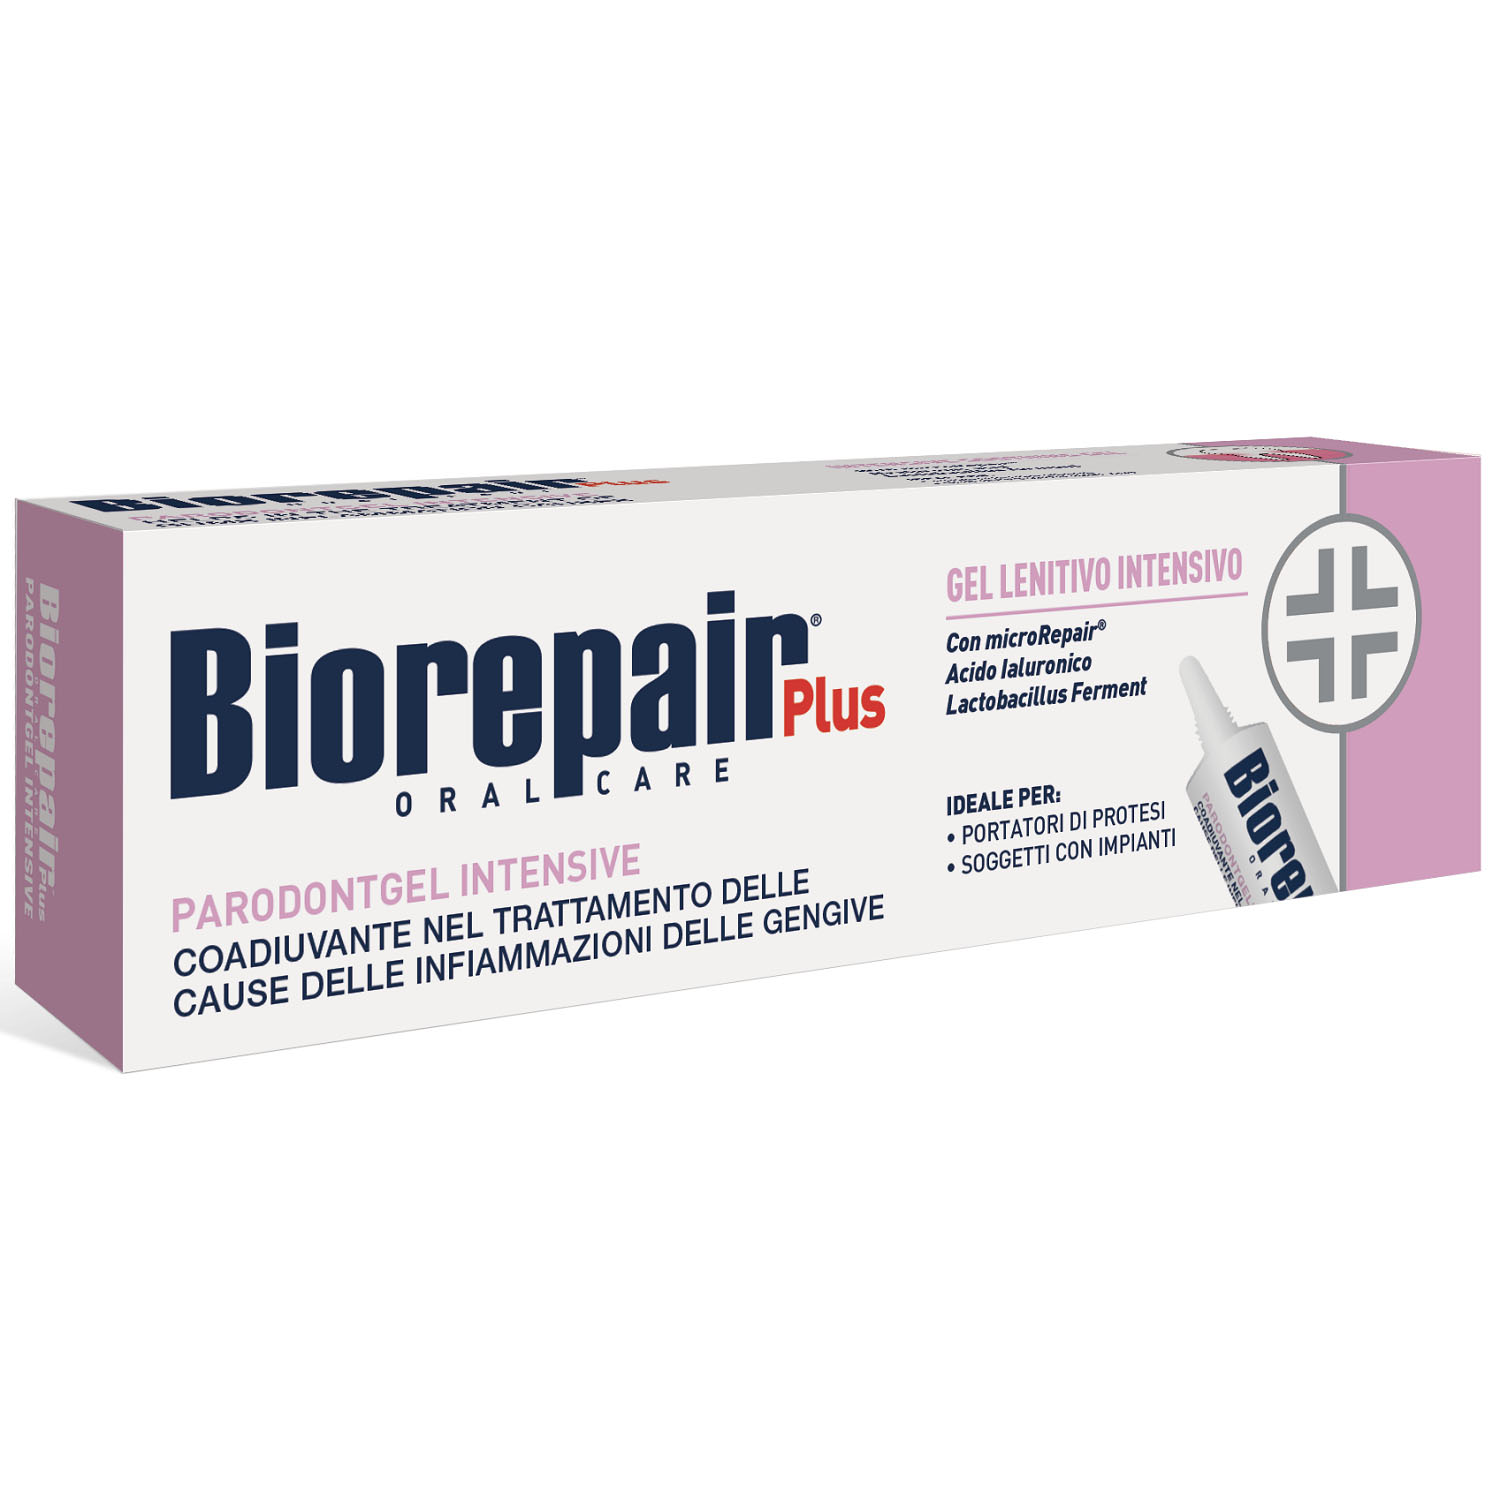 Biorepair Успокаивающий гель для десен Biorepair Plus Parodontgel Intensive 12+, 20 мл (Biorepair, Отбеливание и лечение) biorepair набор зубных паст для сохранения белизны 2х75 мл biorepair отбеливание и лечение